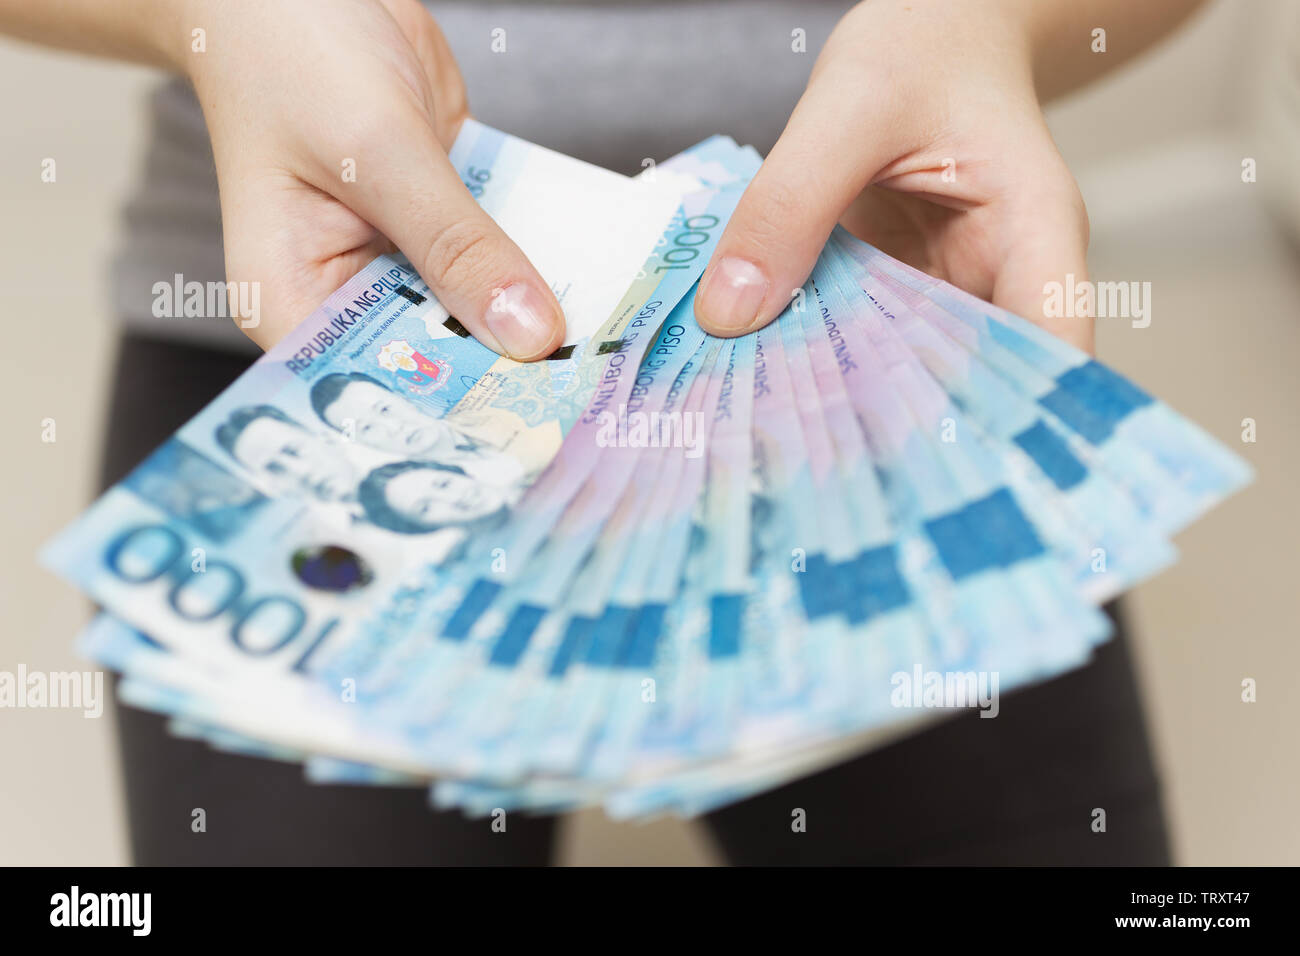 Mani stipendio o bundle di pagamento di denaro contante di mille filippine pesos come se essere ricco. Visualizza off, pagare le bollette o dare tangenti. Foto Stock